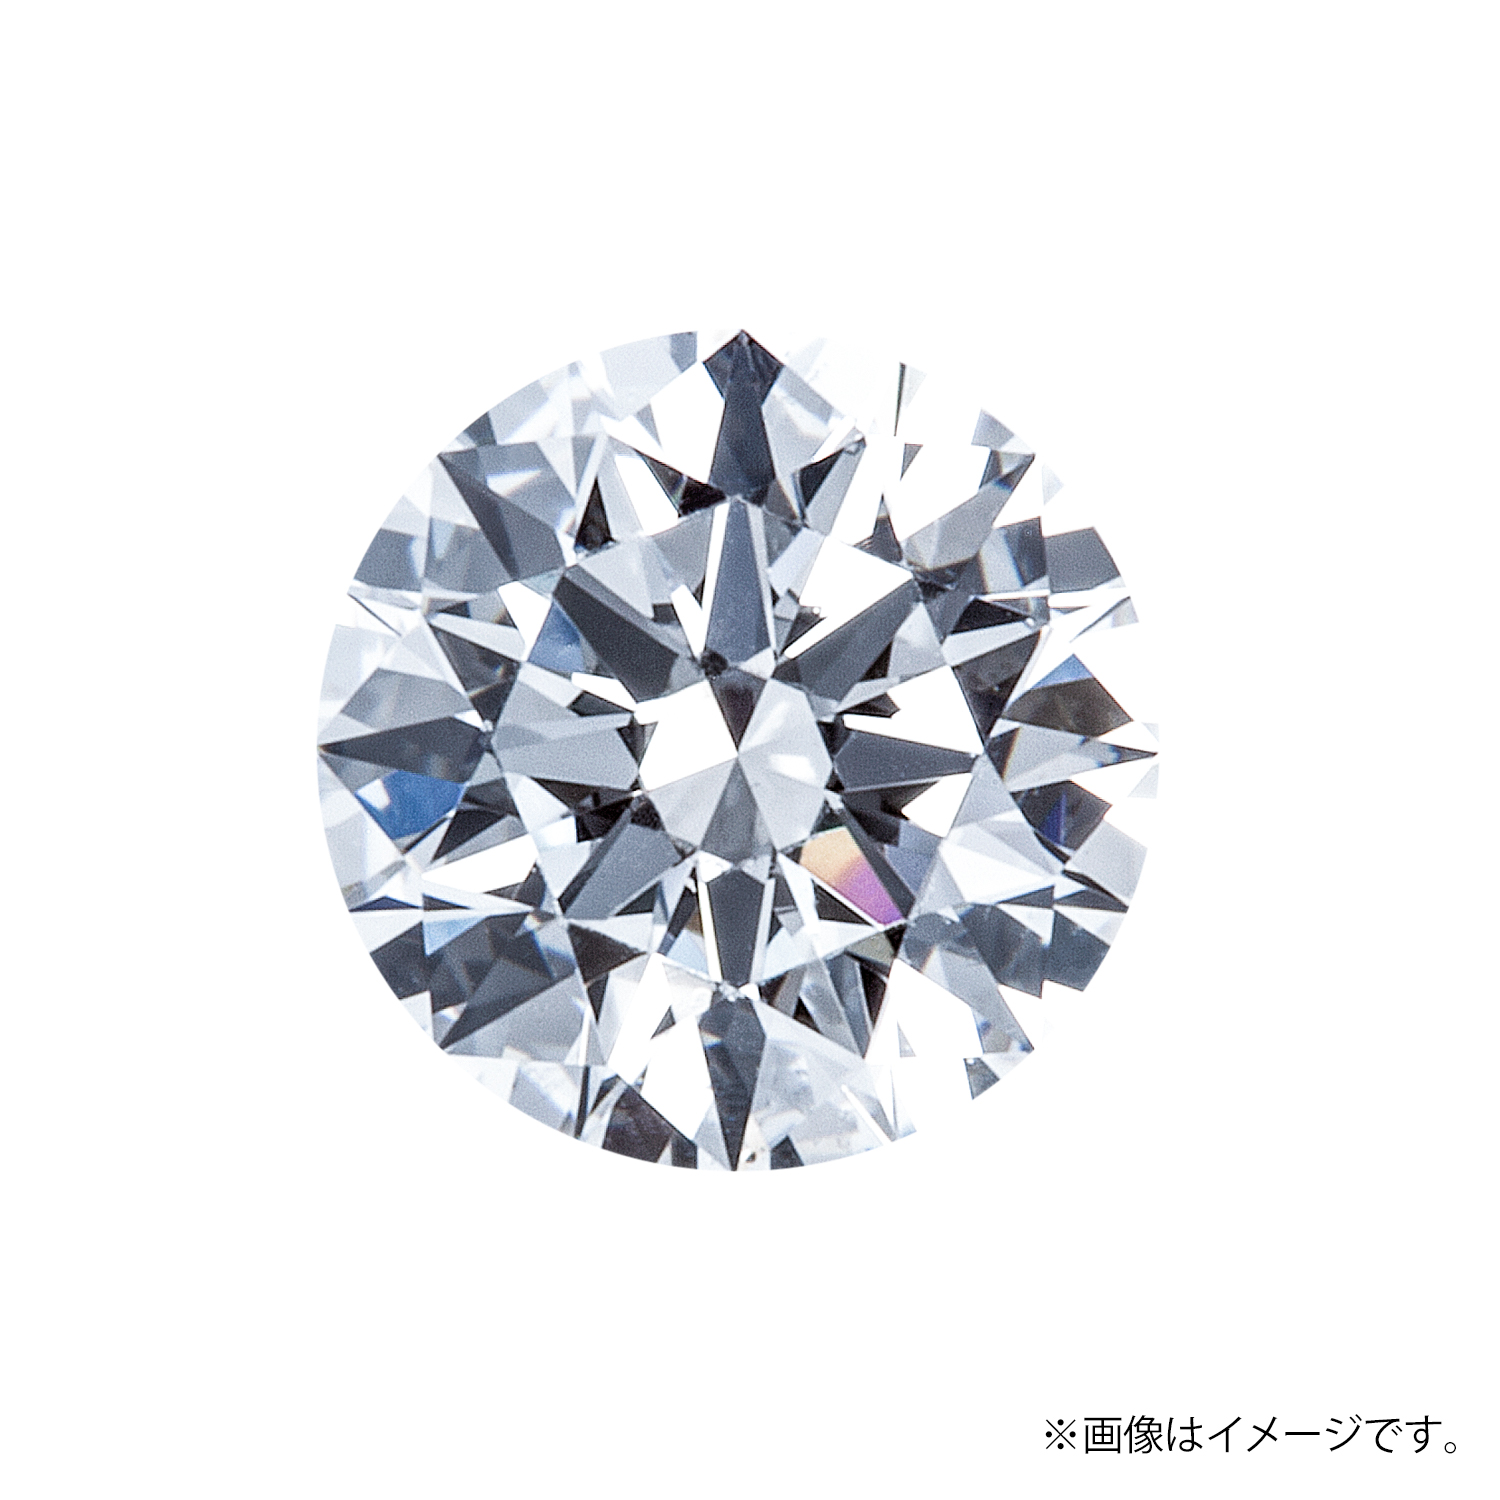 0.407ct Round ダイヤモンド / F / VS1 / 3EX-H&C